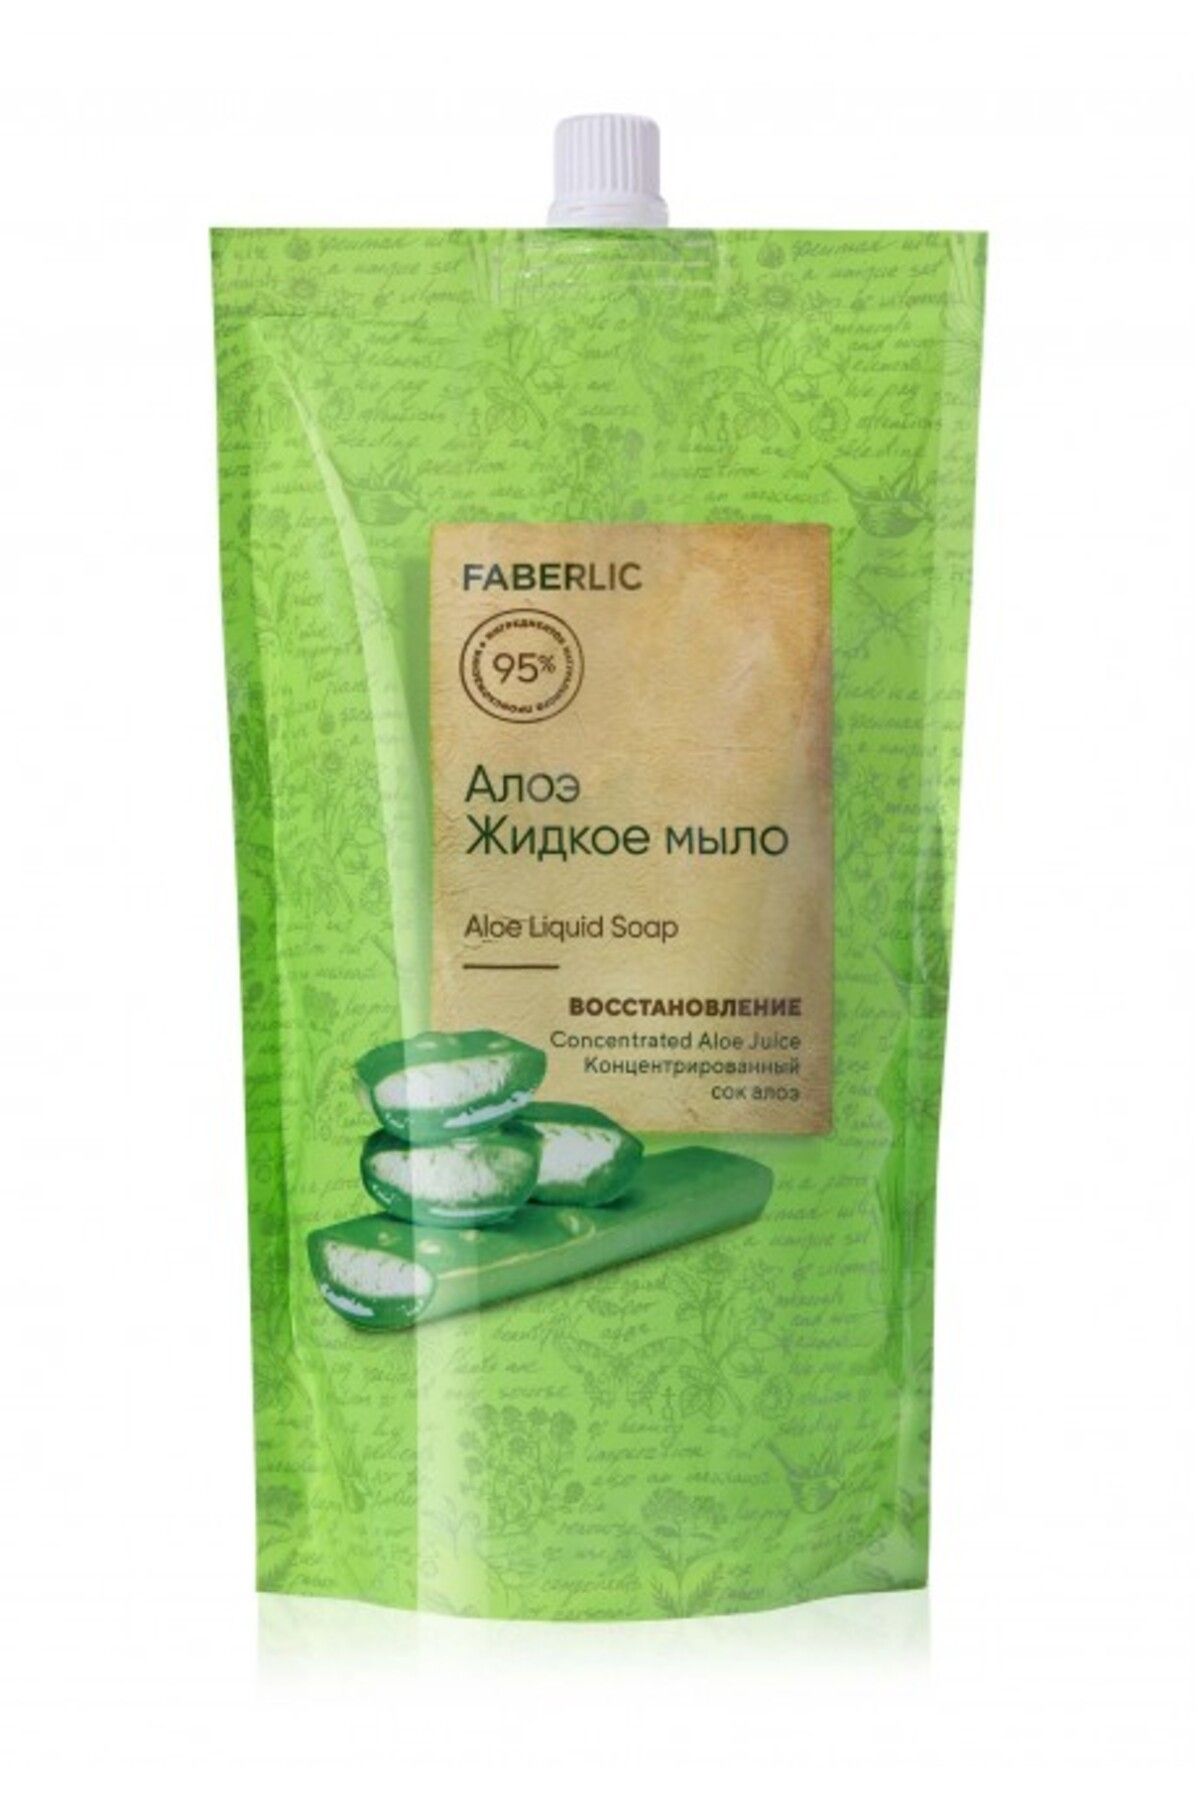 Faberlic Sıvı el sabunu «Aloe Vera»

Ürün